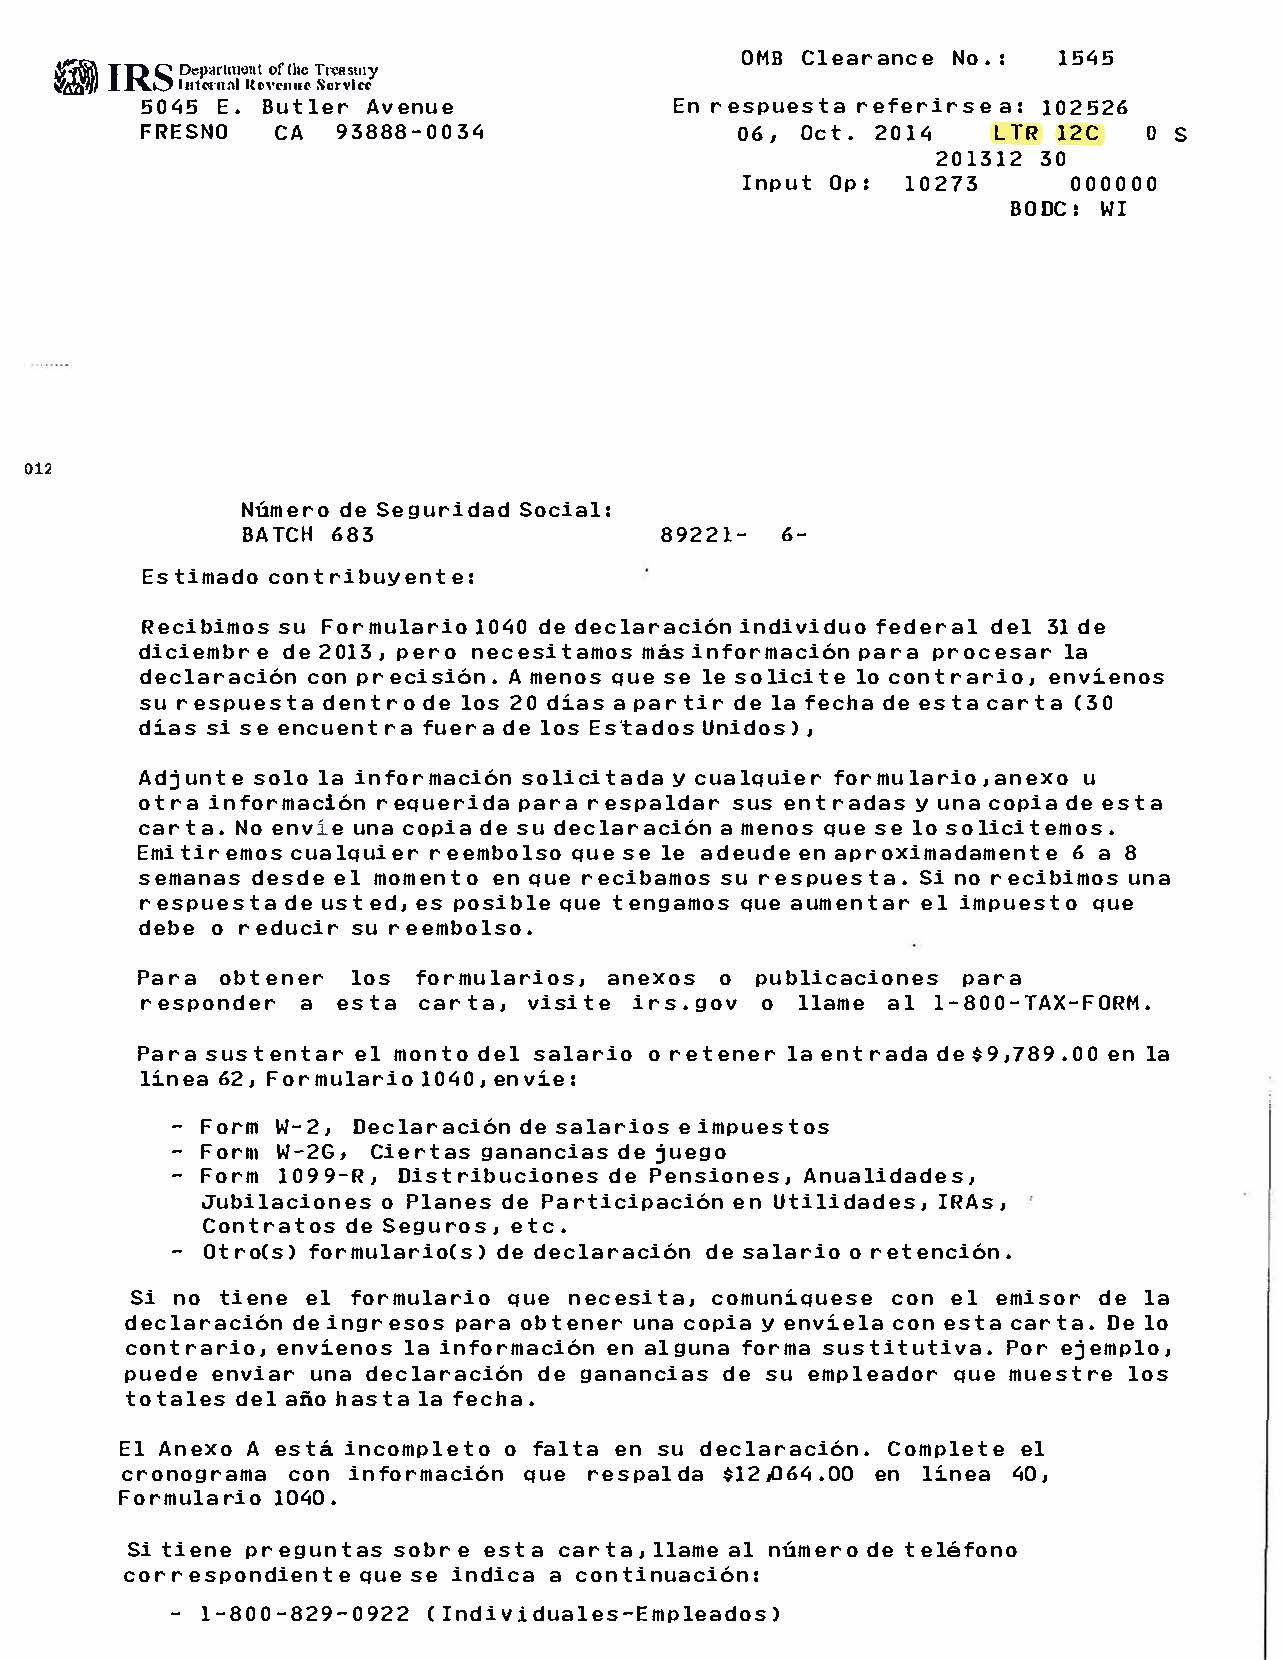 Carta 12C del IRS